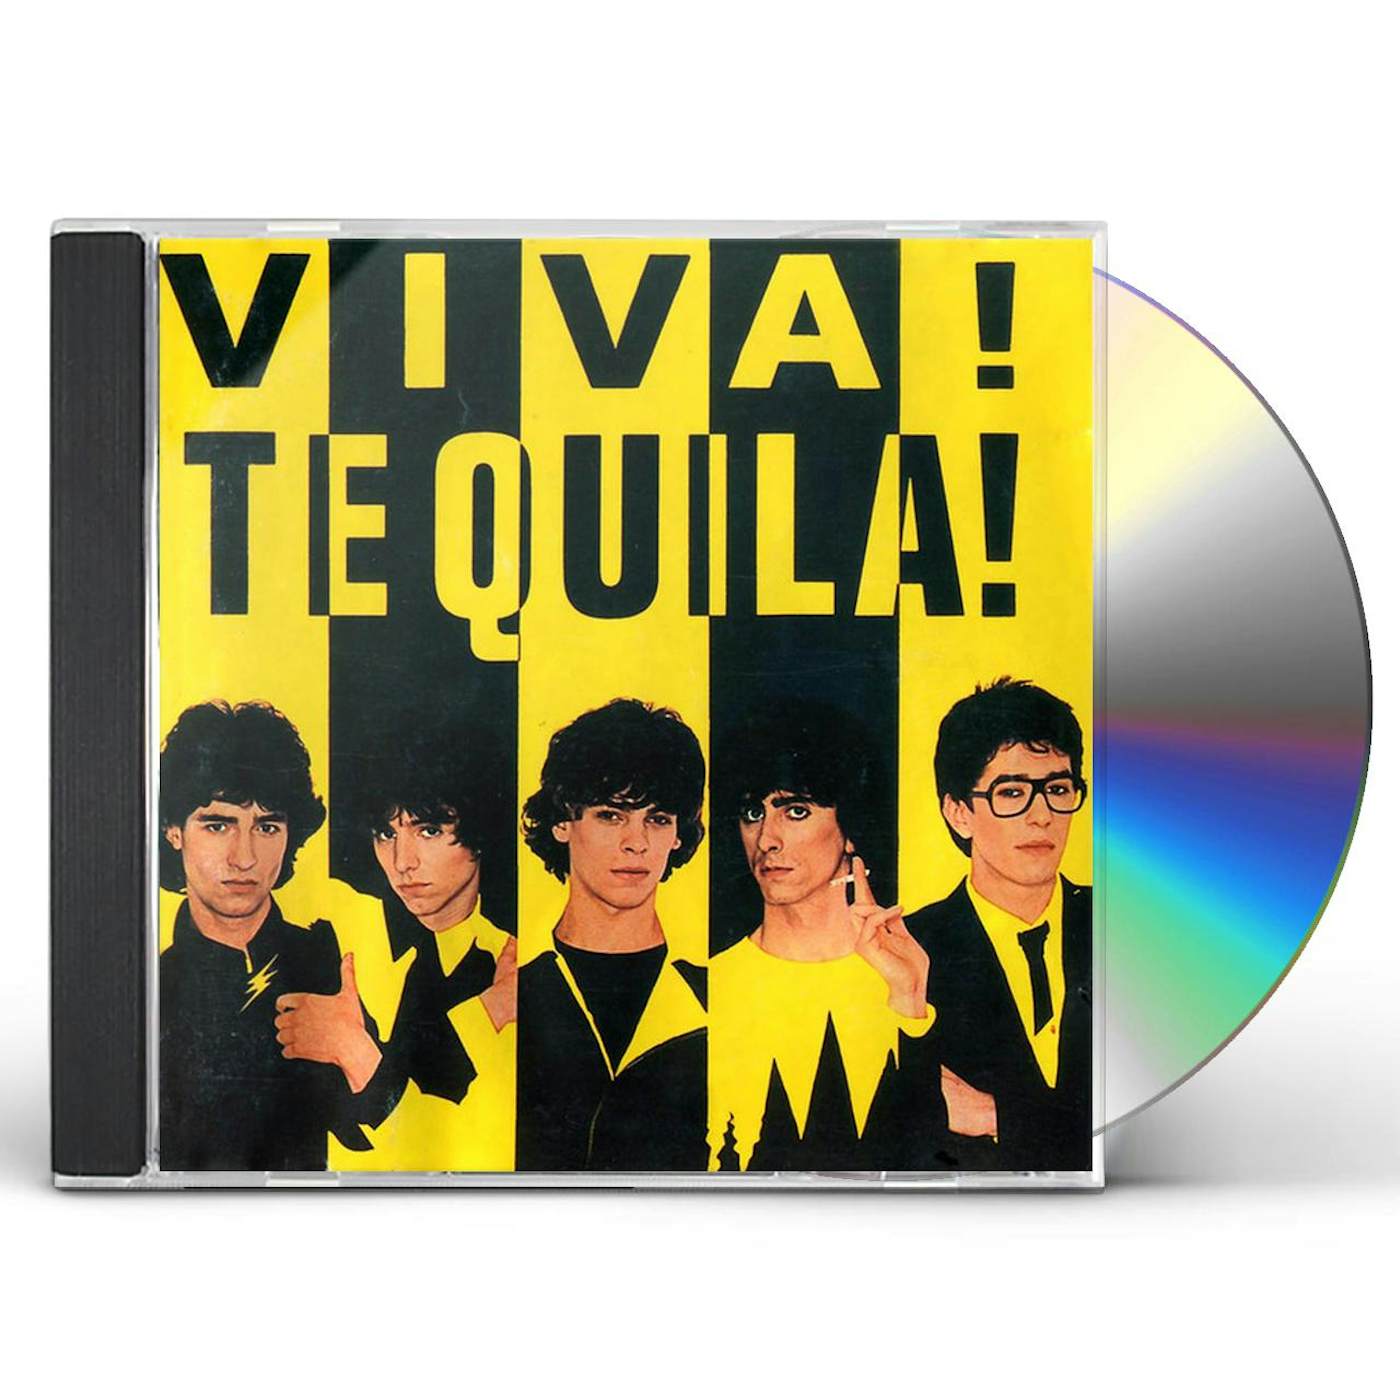 VIVA TEQUILA CD